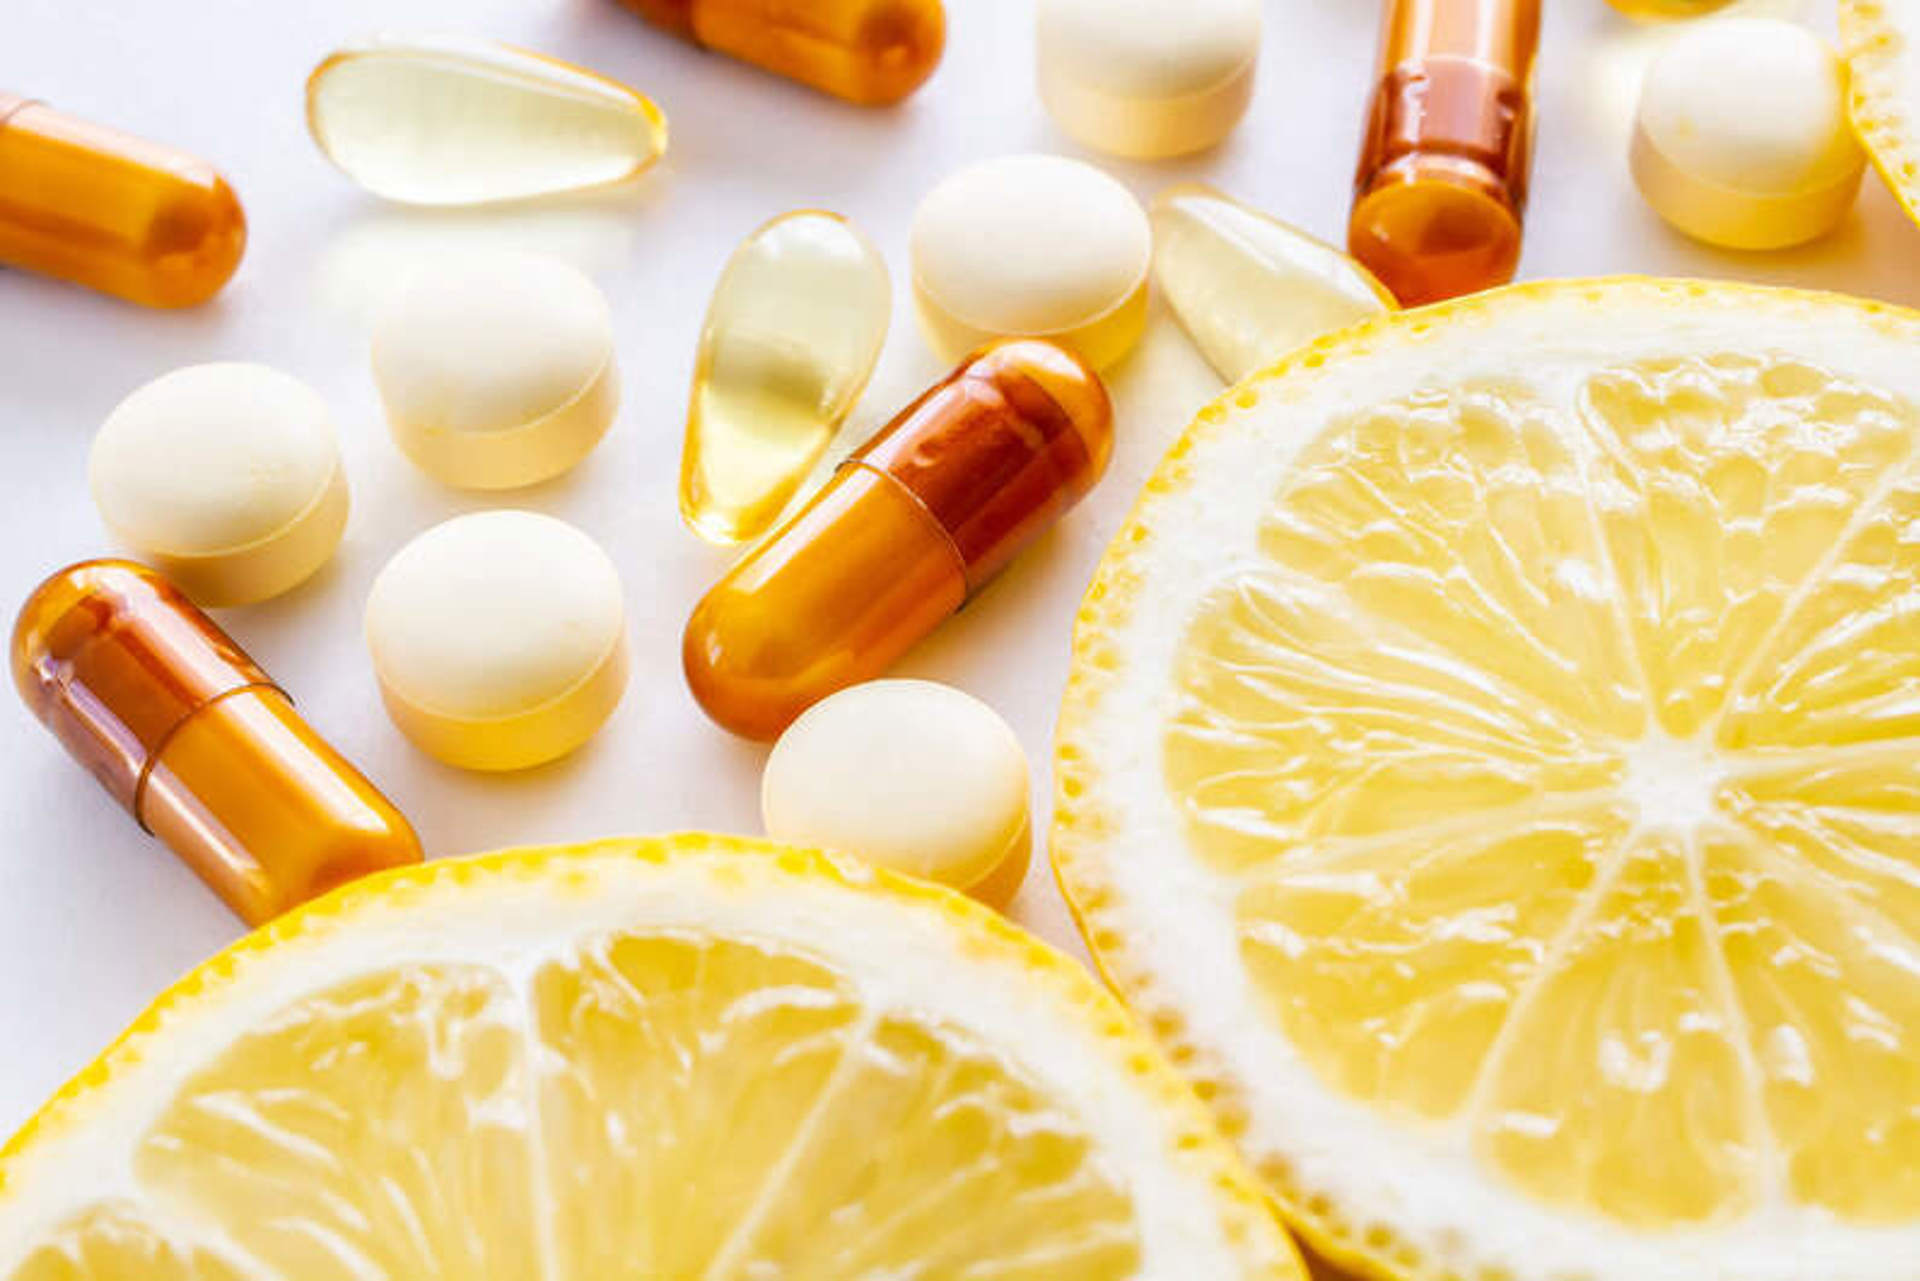 C vitamini eksikliği belirtileri nelerdir?